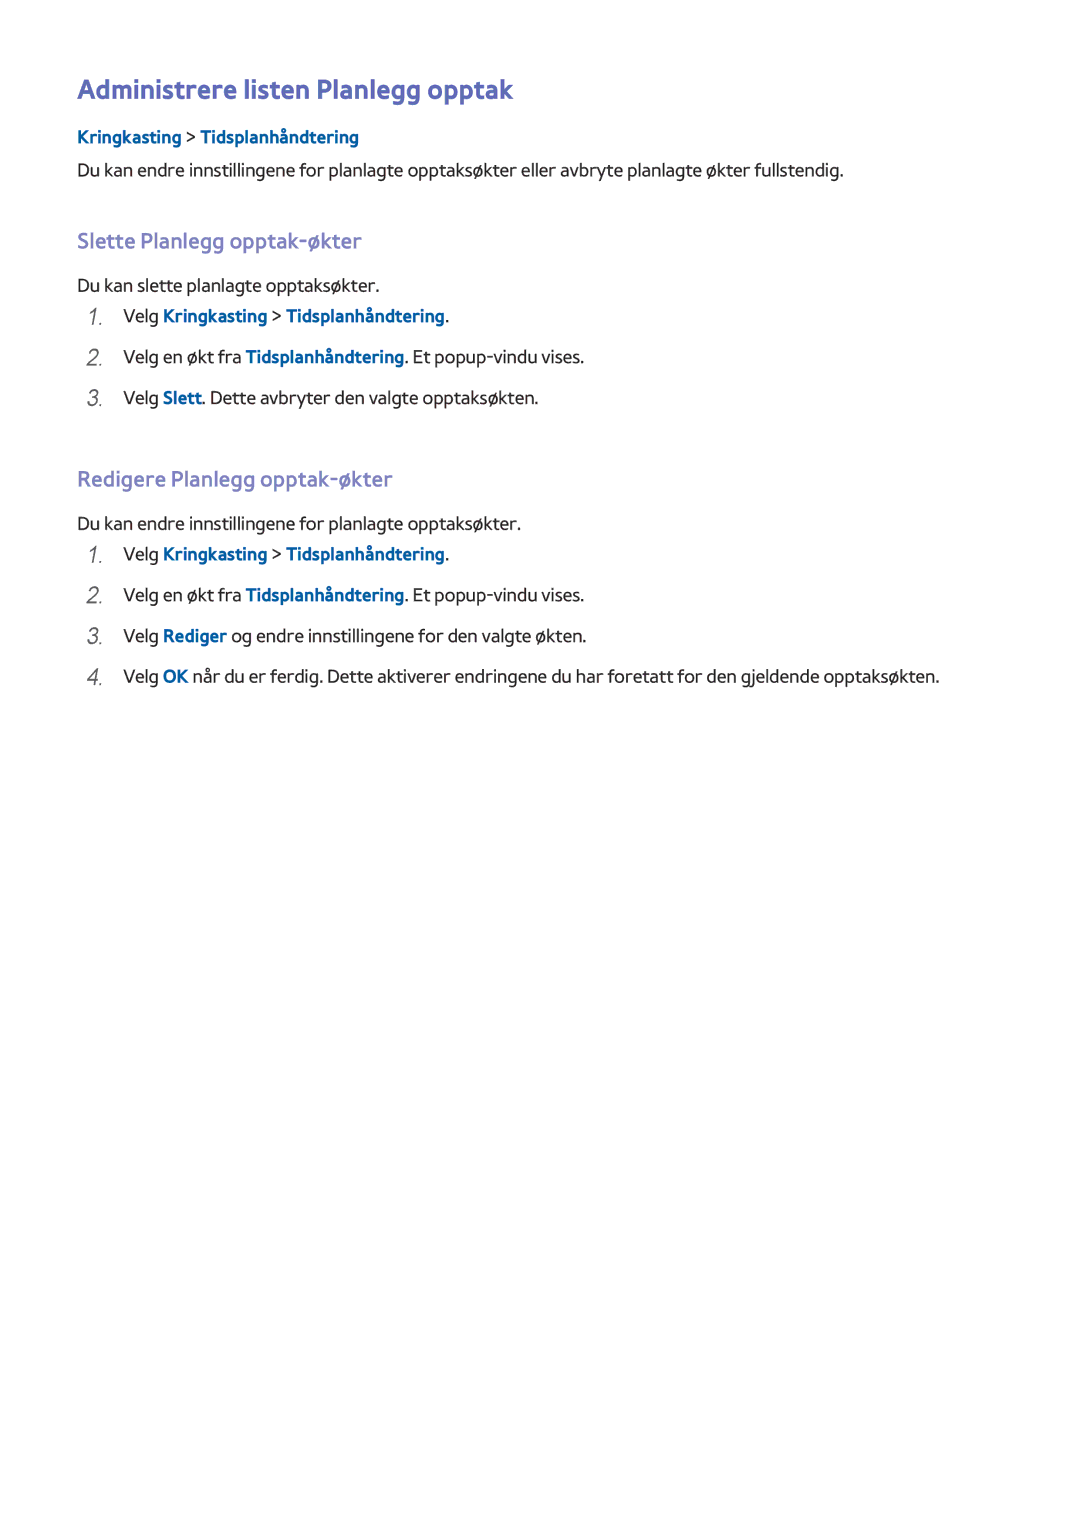 Samsung UE48H6705STXXE Administrere listen Planlegg opptak, Slette Planlegg opptak-økter, Redigere Planlegg opptak-økter 